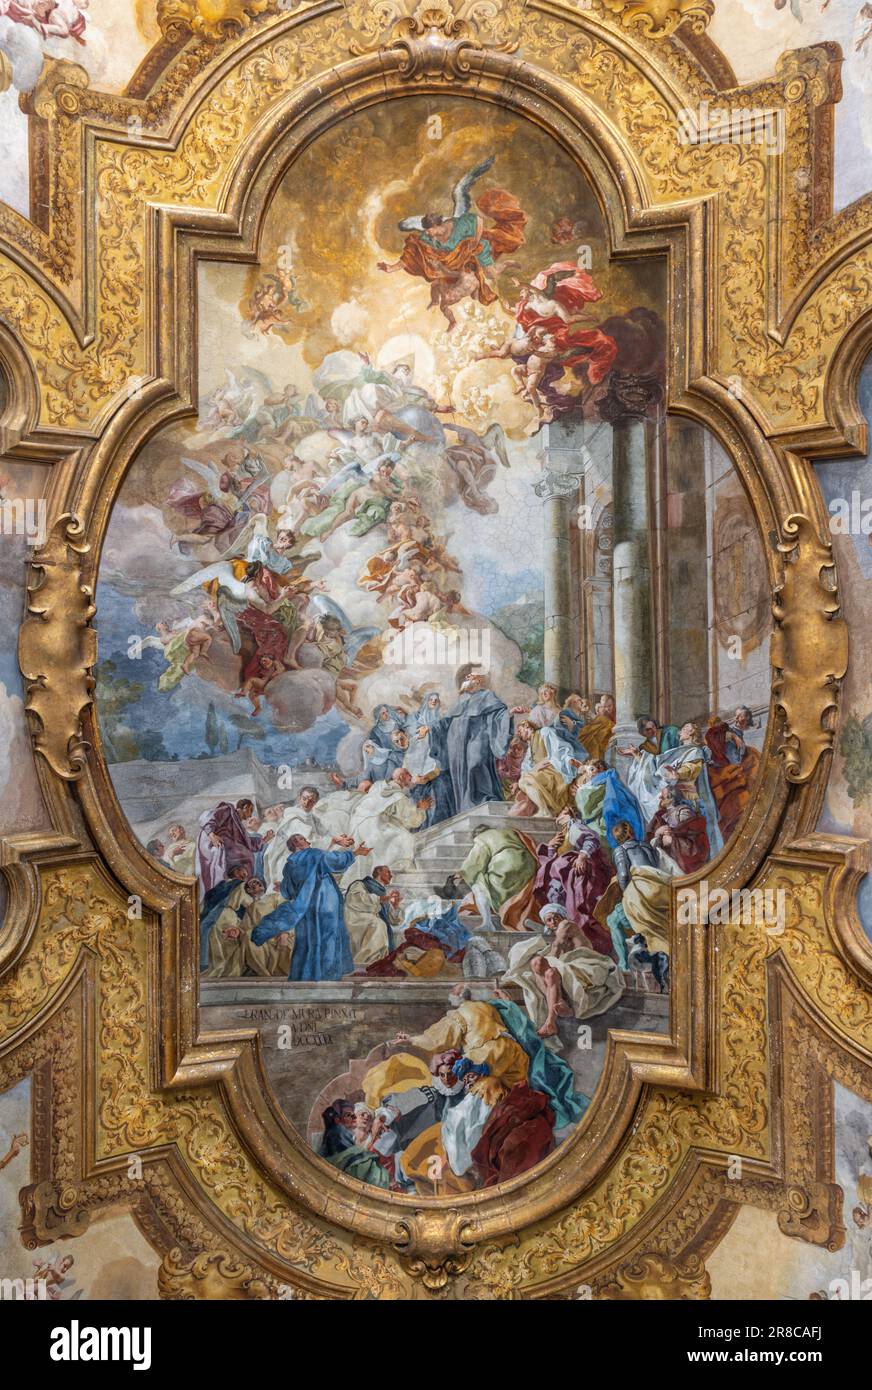 NAPLES, ITALY - APRIL 21, 2023: The ceiling fresco Scene from life of St. Benedict in the church Chiesa dei Santi Severino e Sossio Stock Photo